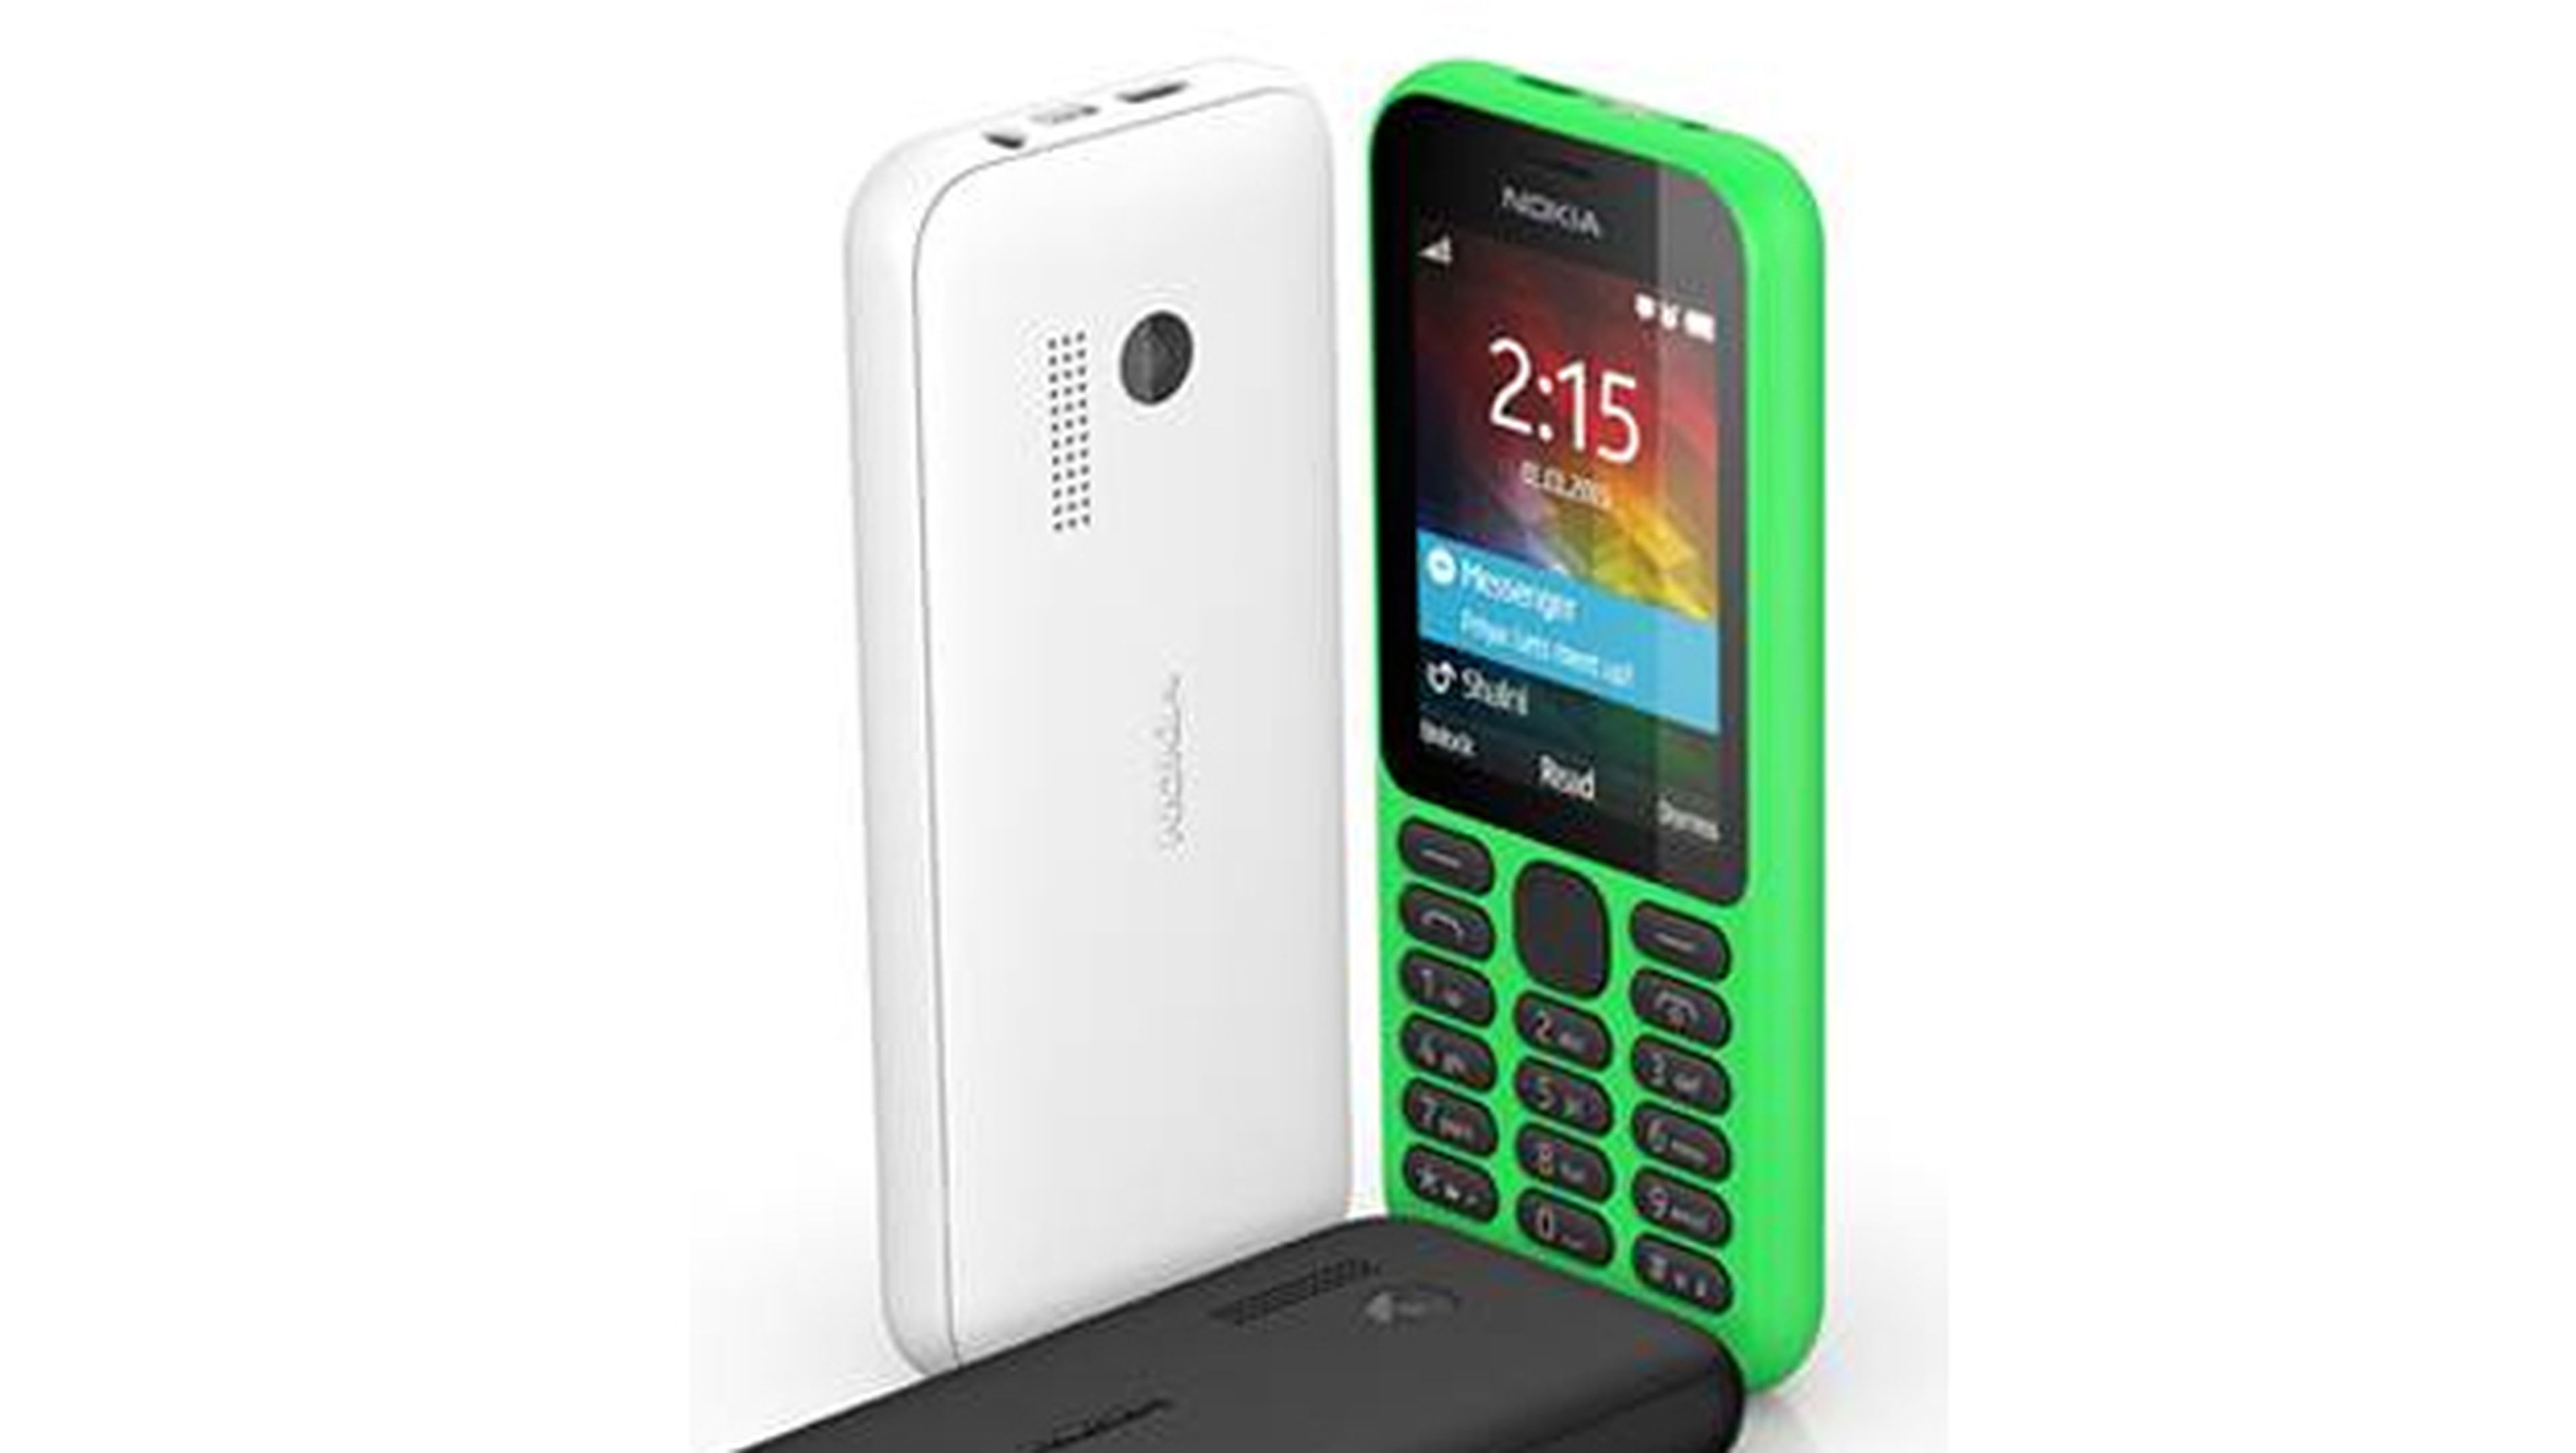 Nokia Barato